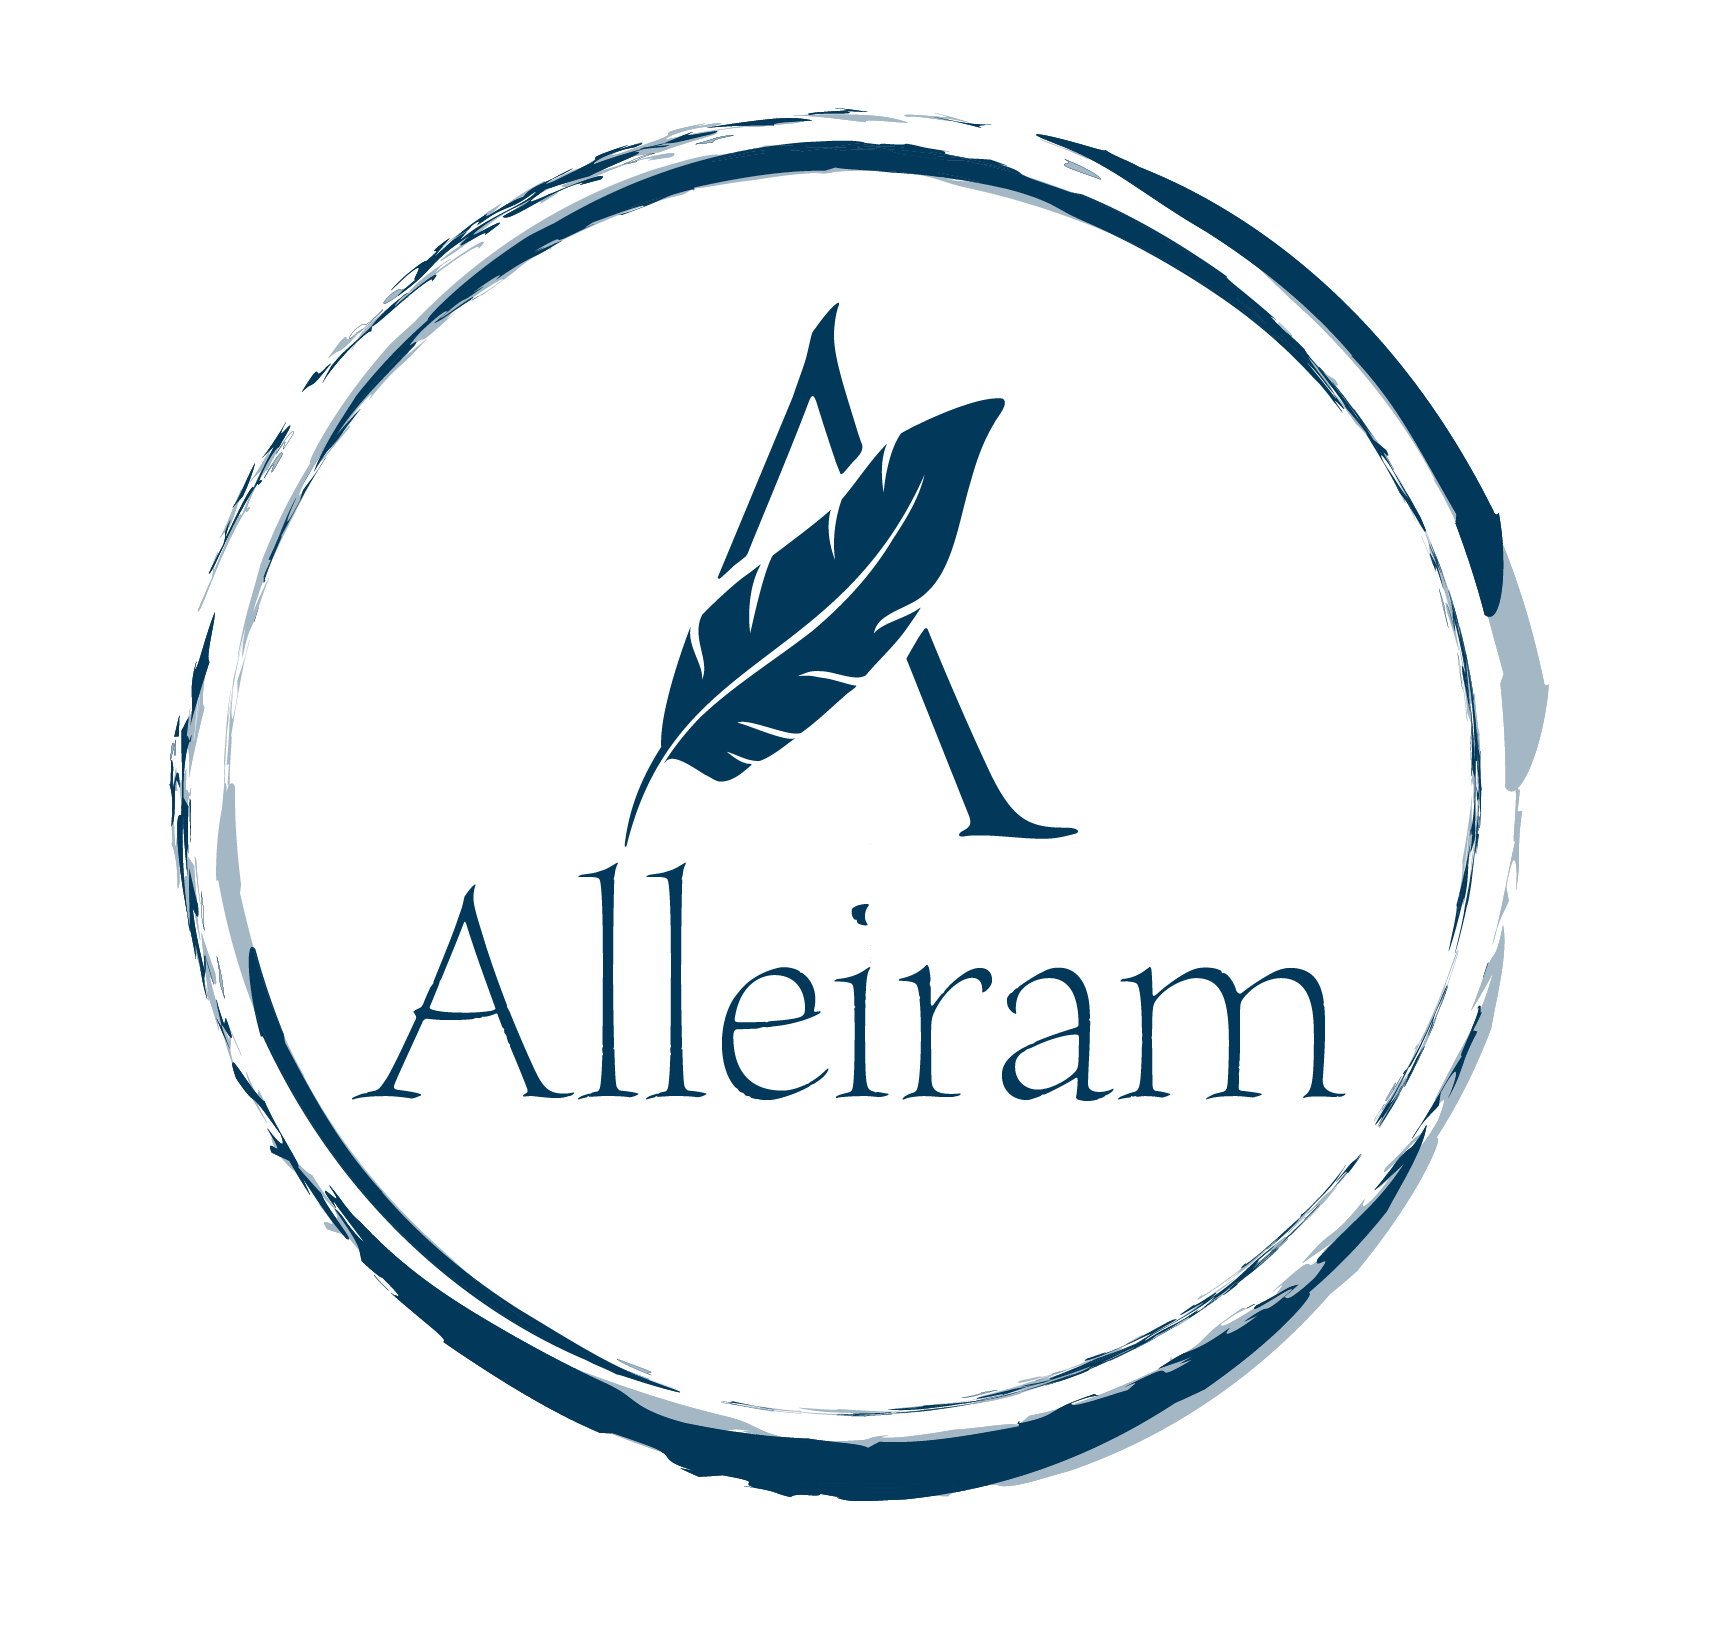 Image of Alleiram logo.